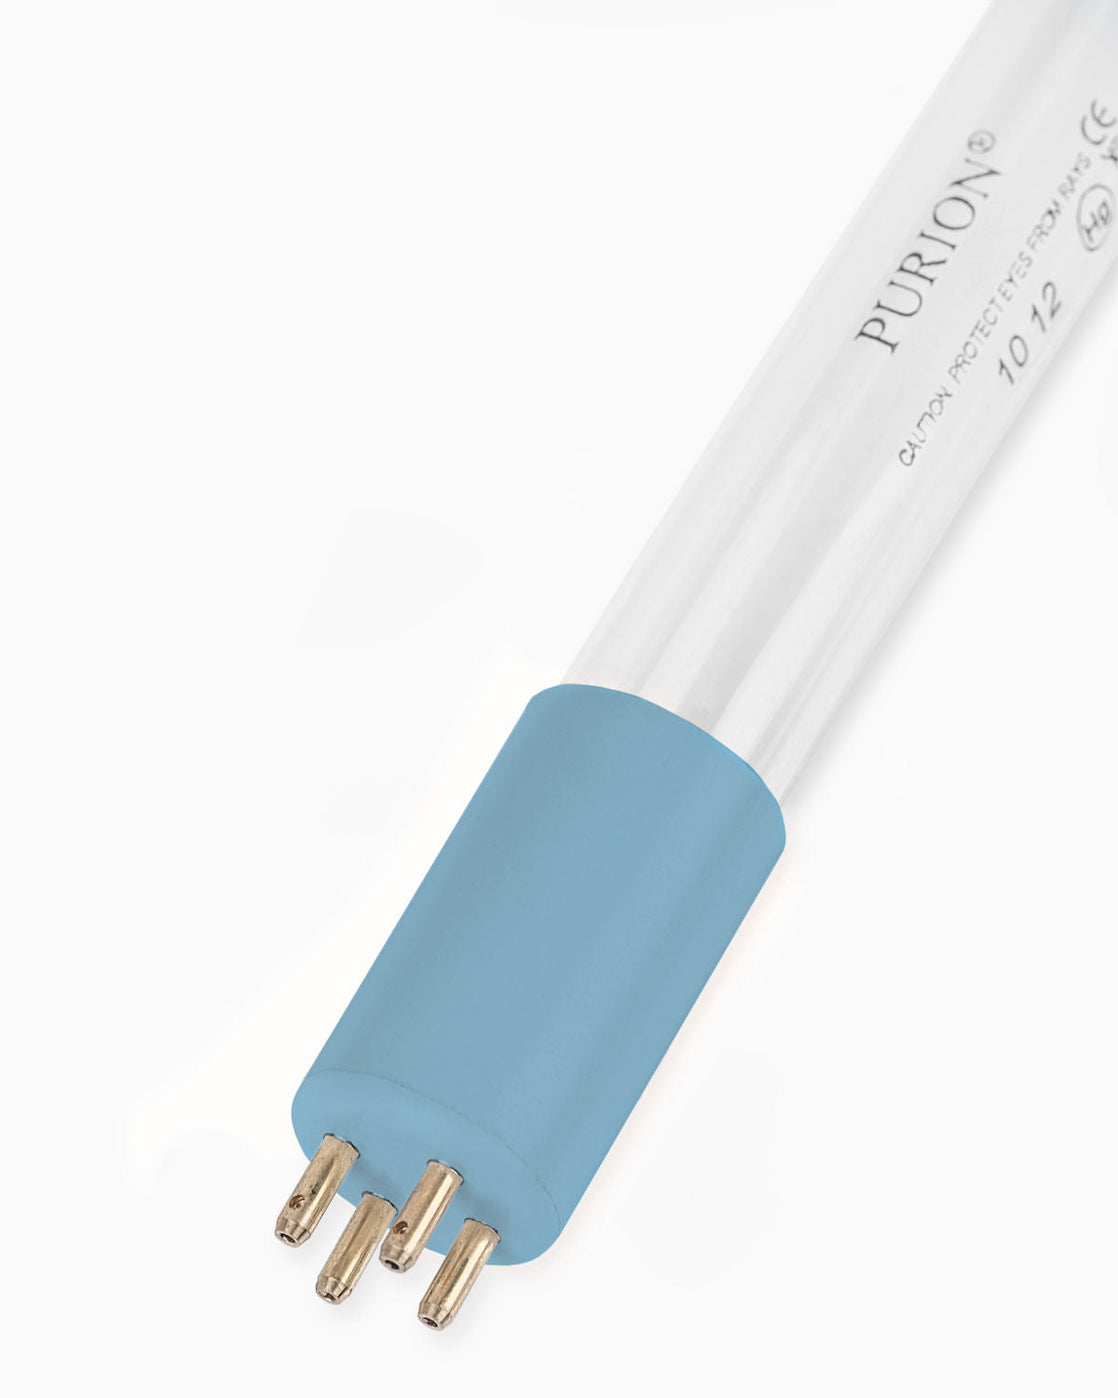 Eine PURION 2501 PVC-U OTC Plus Blaulichtröhre auf weißem Hintergrund, die das UV-C-Desinfektionsverfahren nutzt. (Markenname: PURION GmbH)